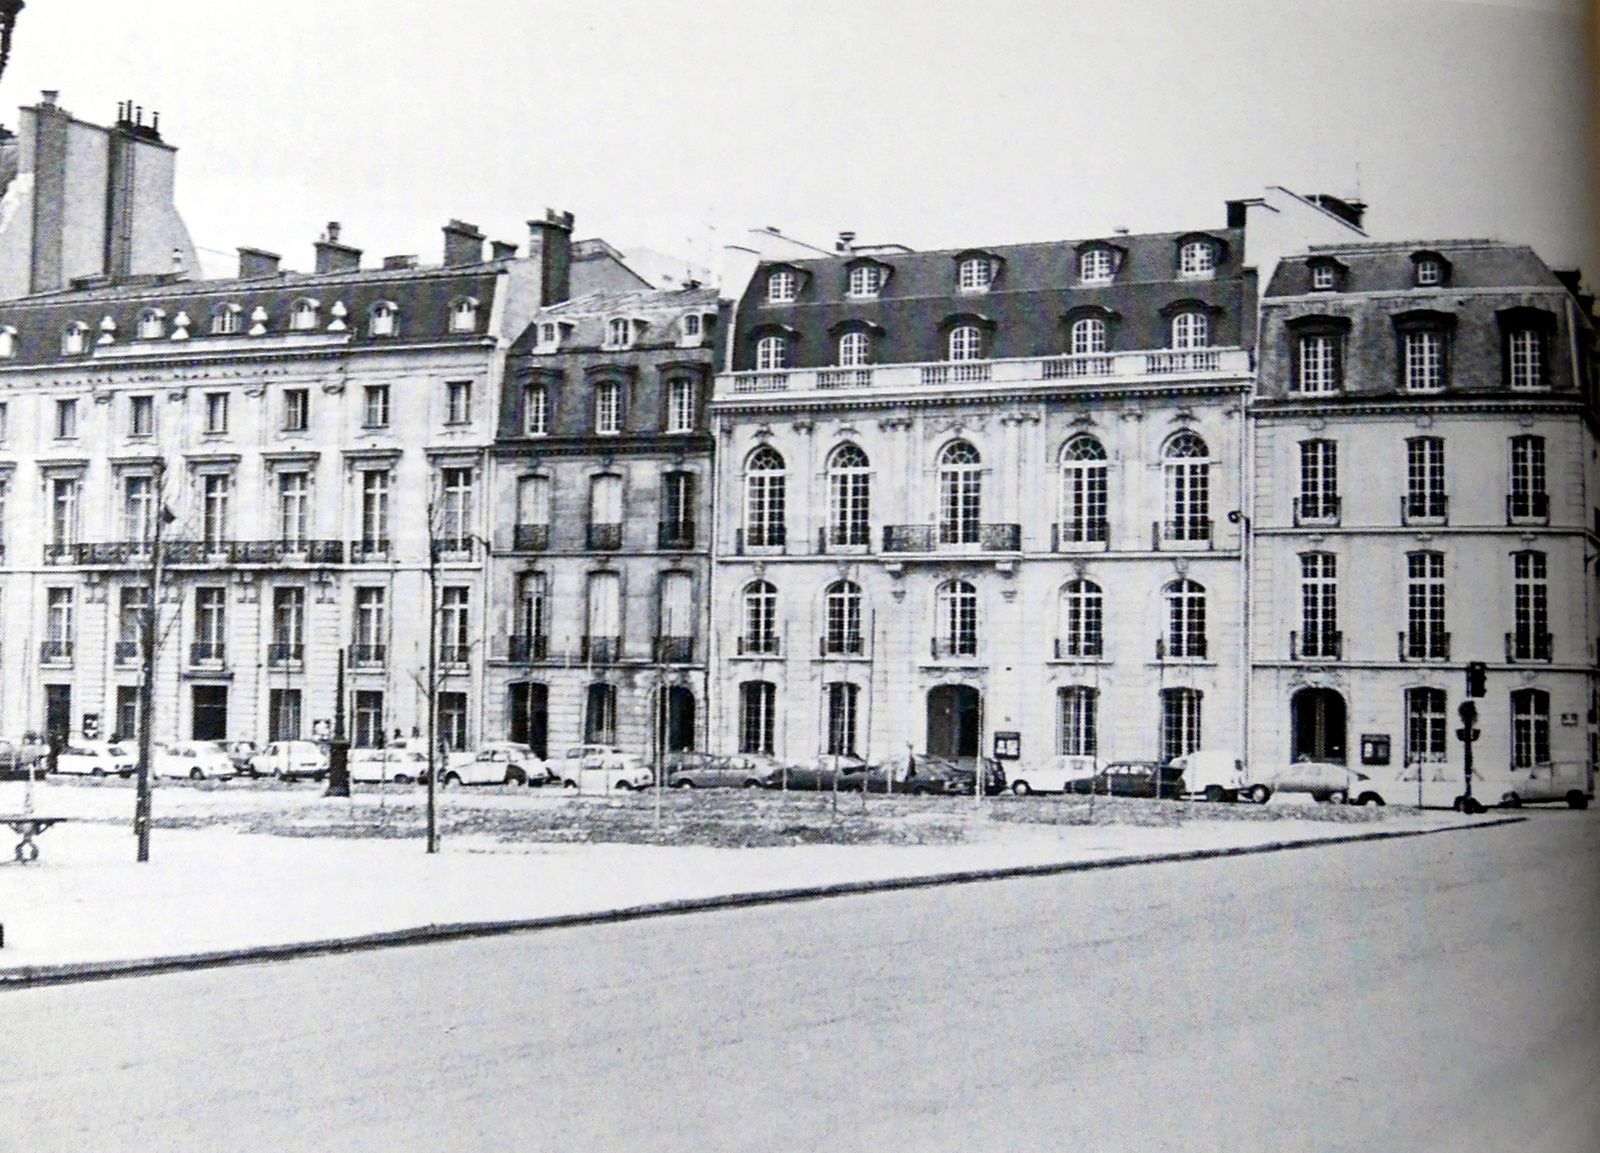 Résidence estivale; le château d'Harcourt et parisienne; "Le mur d'Harcourt", le long de la Place des invalides.